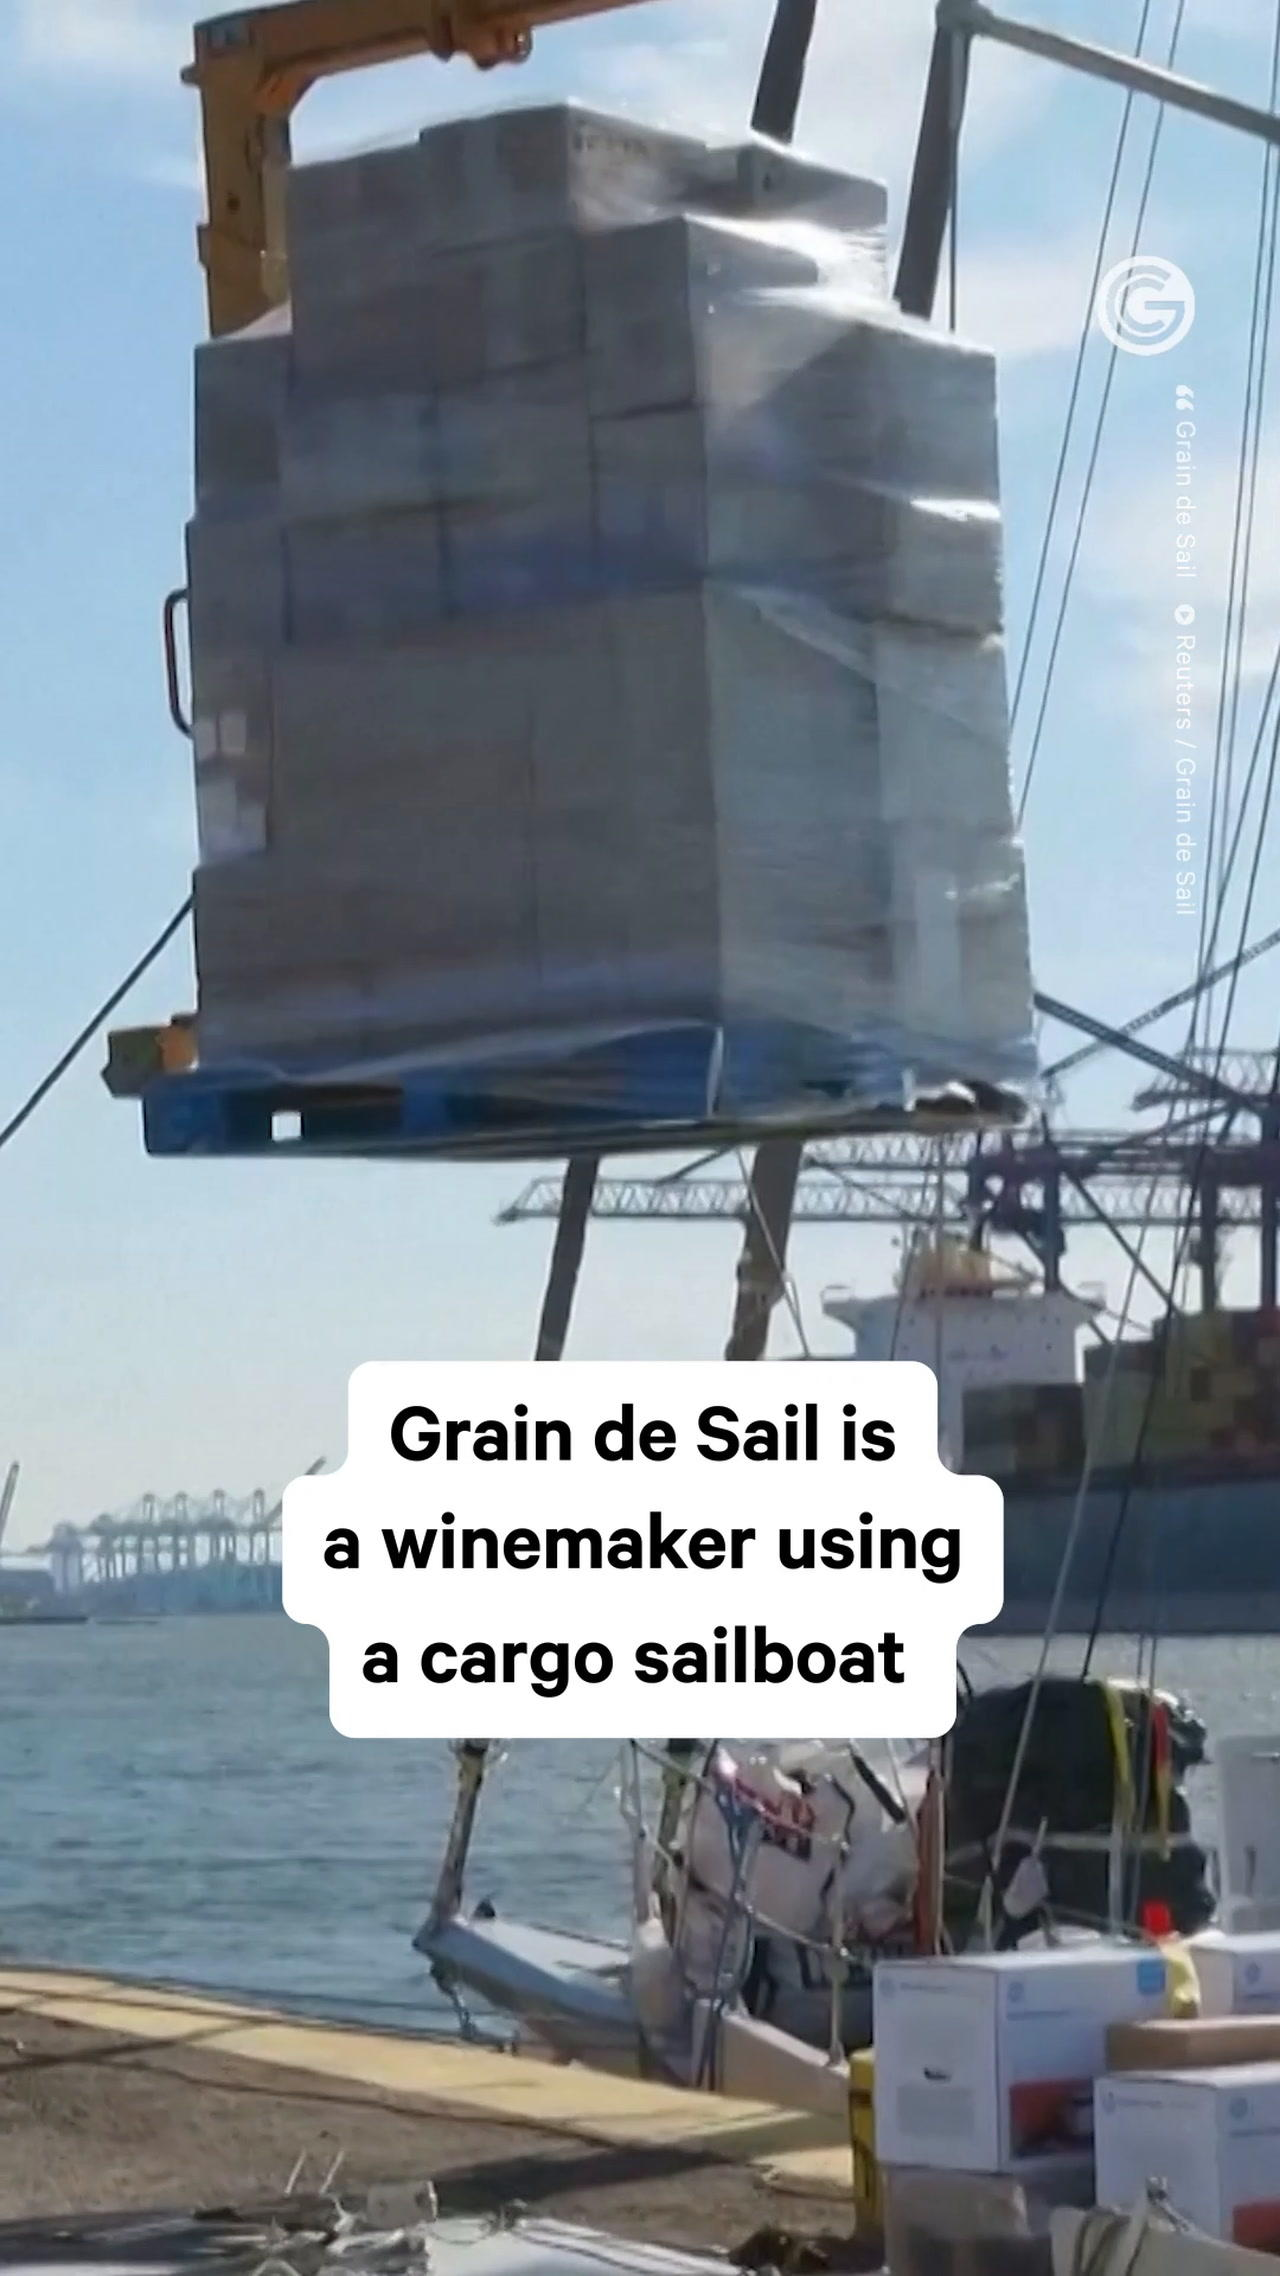 Cargo Sailboats Aim to Minimize Carbon Footprint